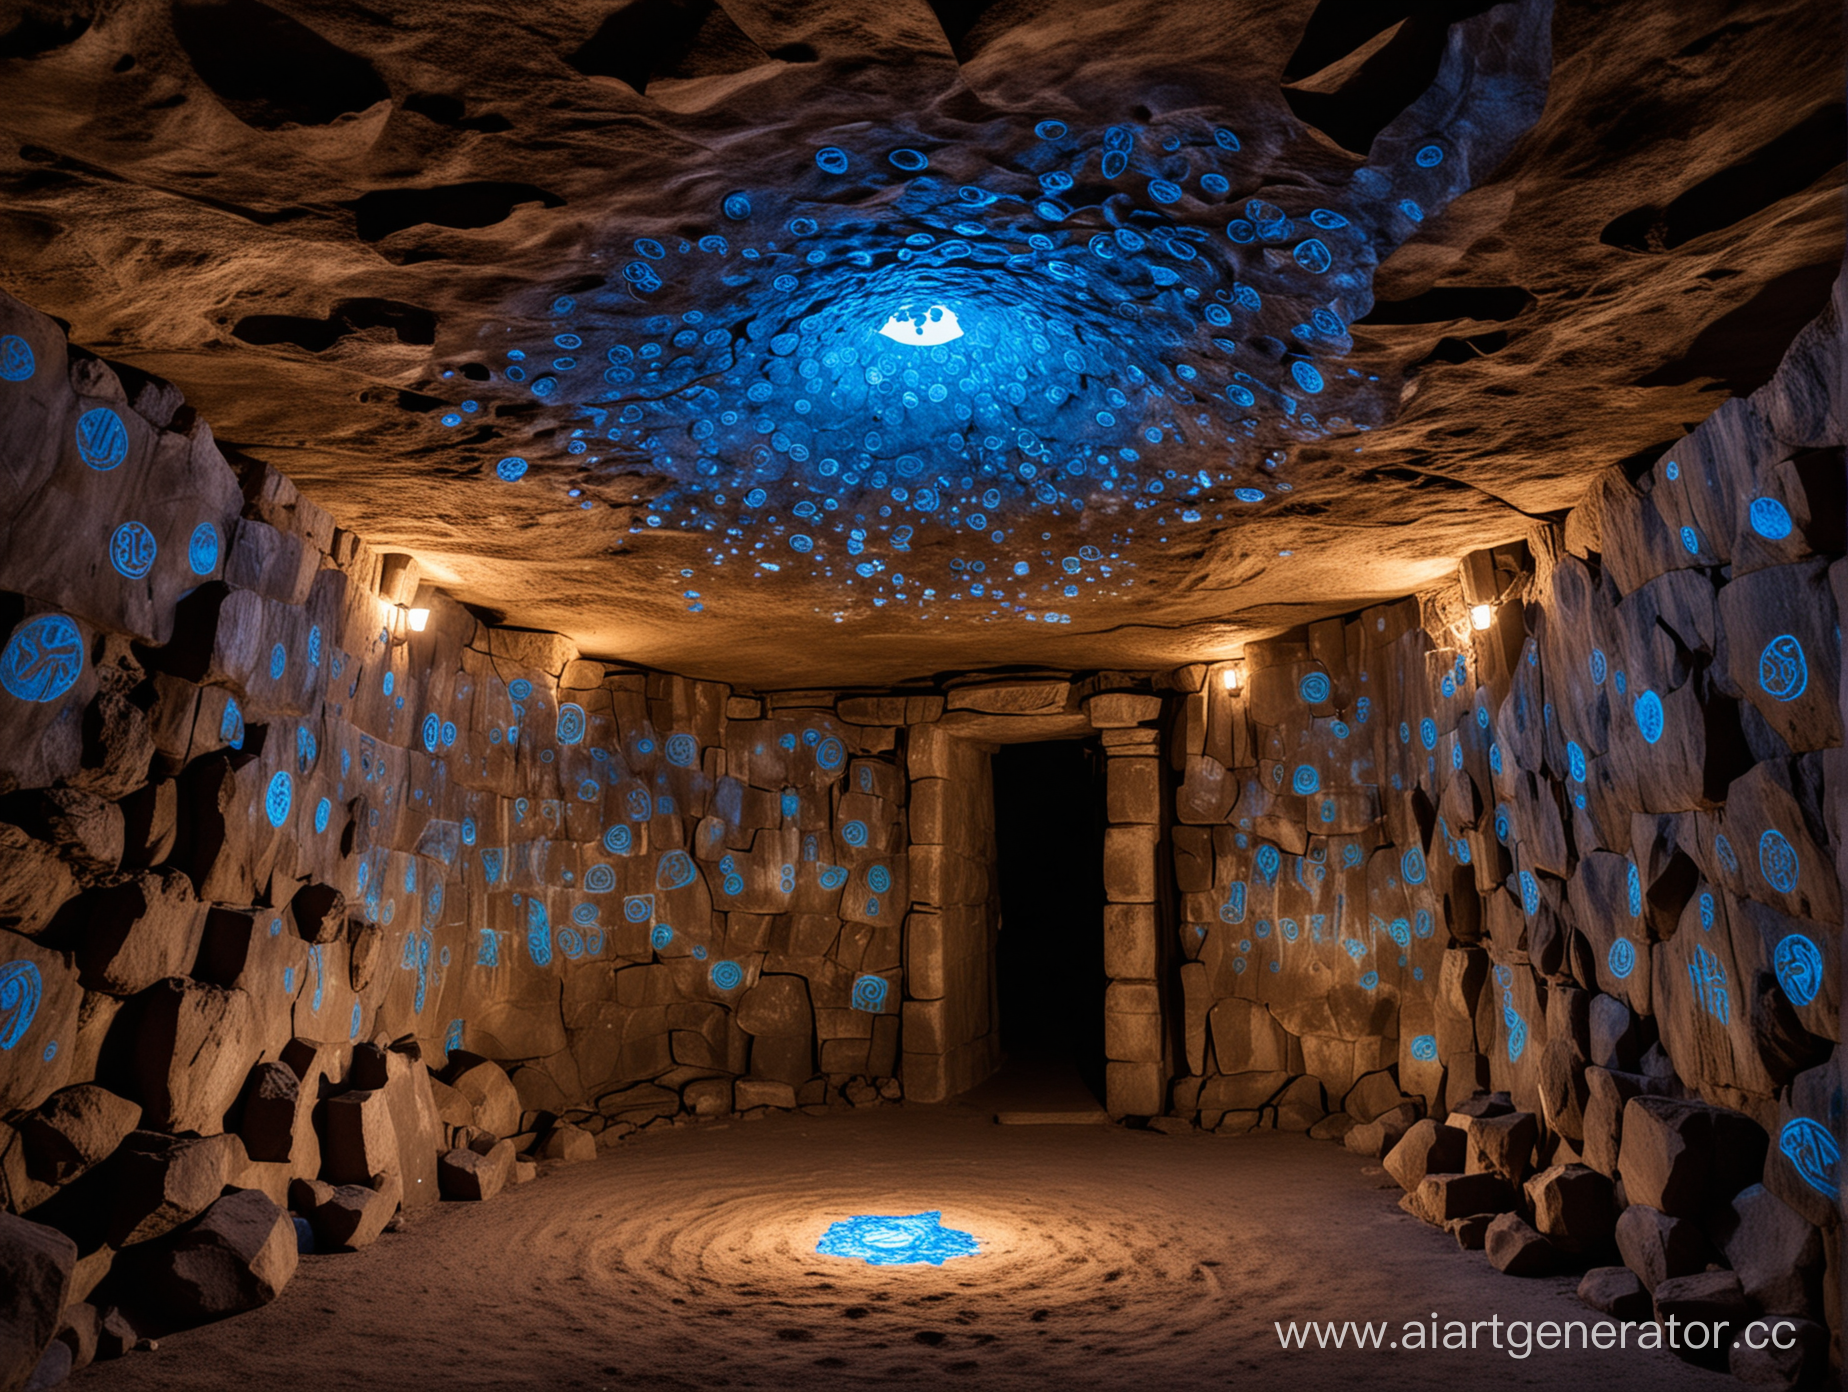 Ровный потолок каменной пещеры, в пещере темно, но на её стенах светится голубым светом орнамент из множества кружочков с магическими рунами внтури